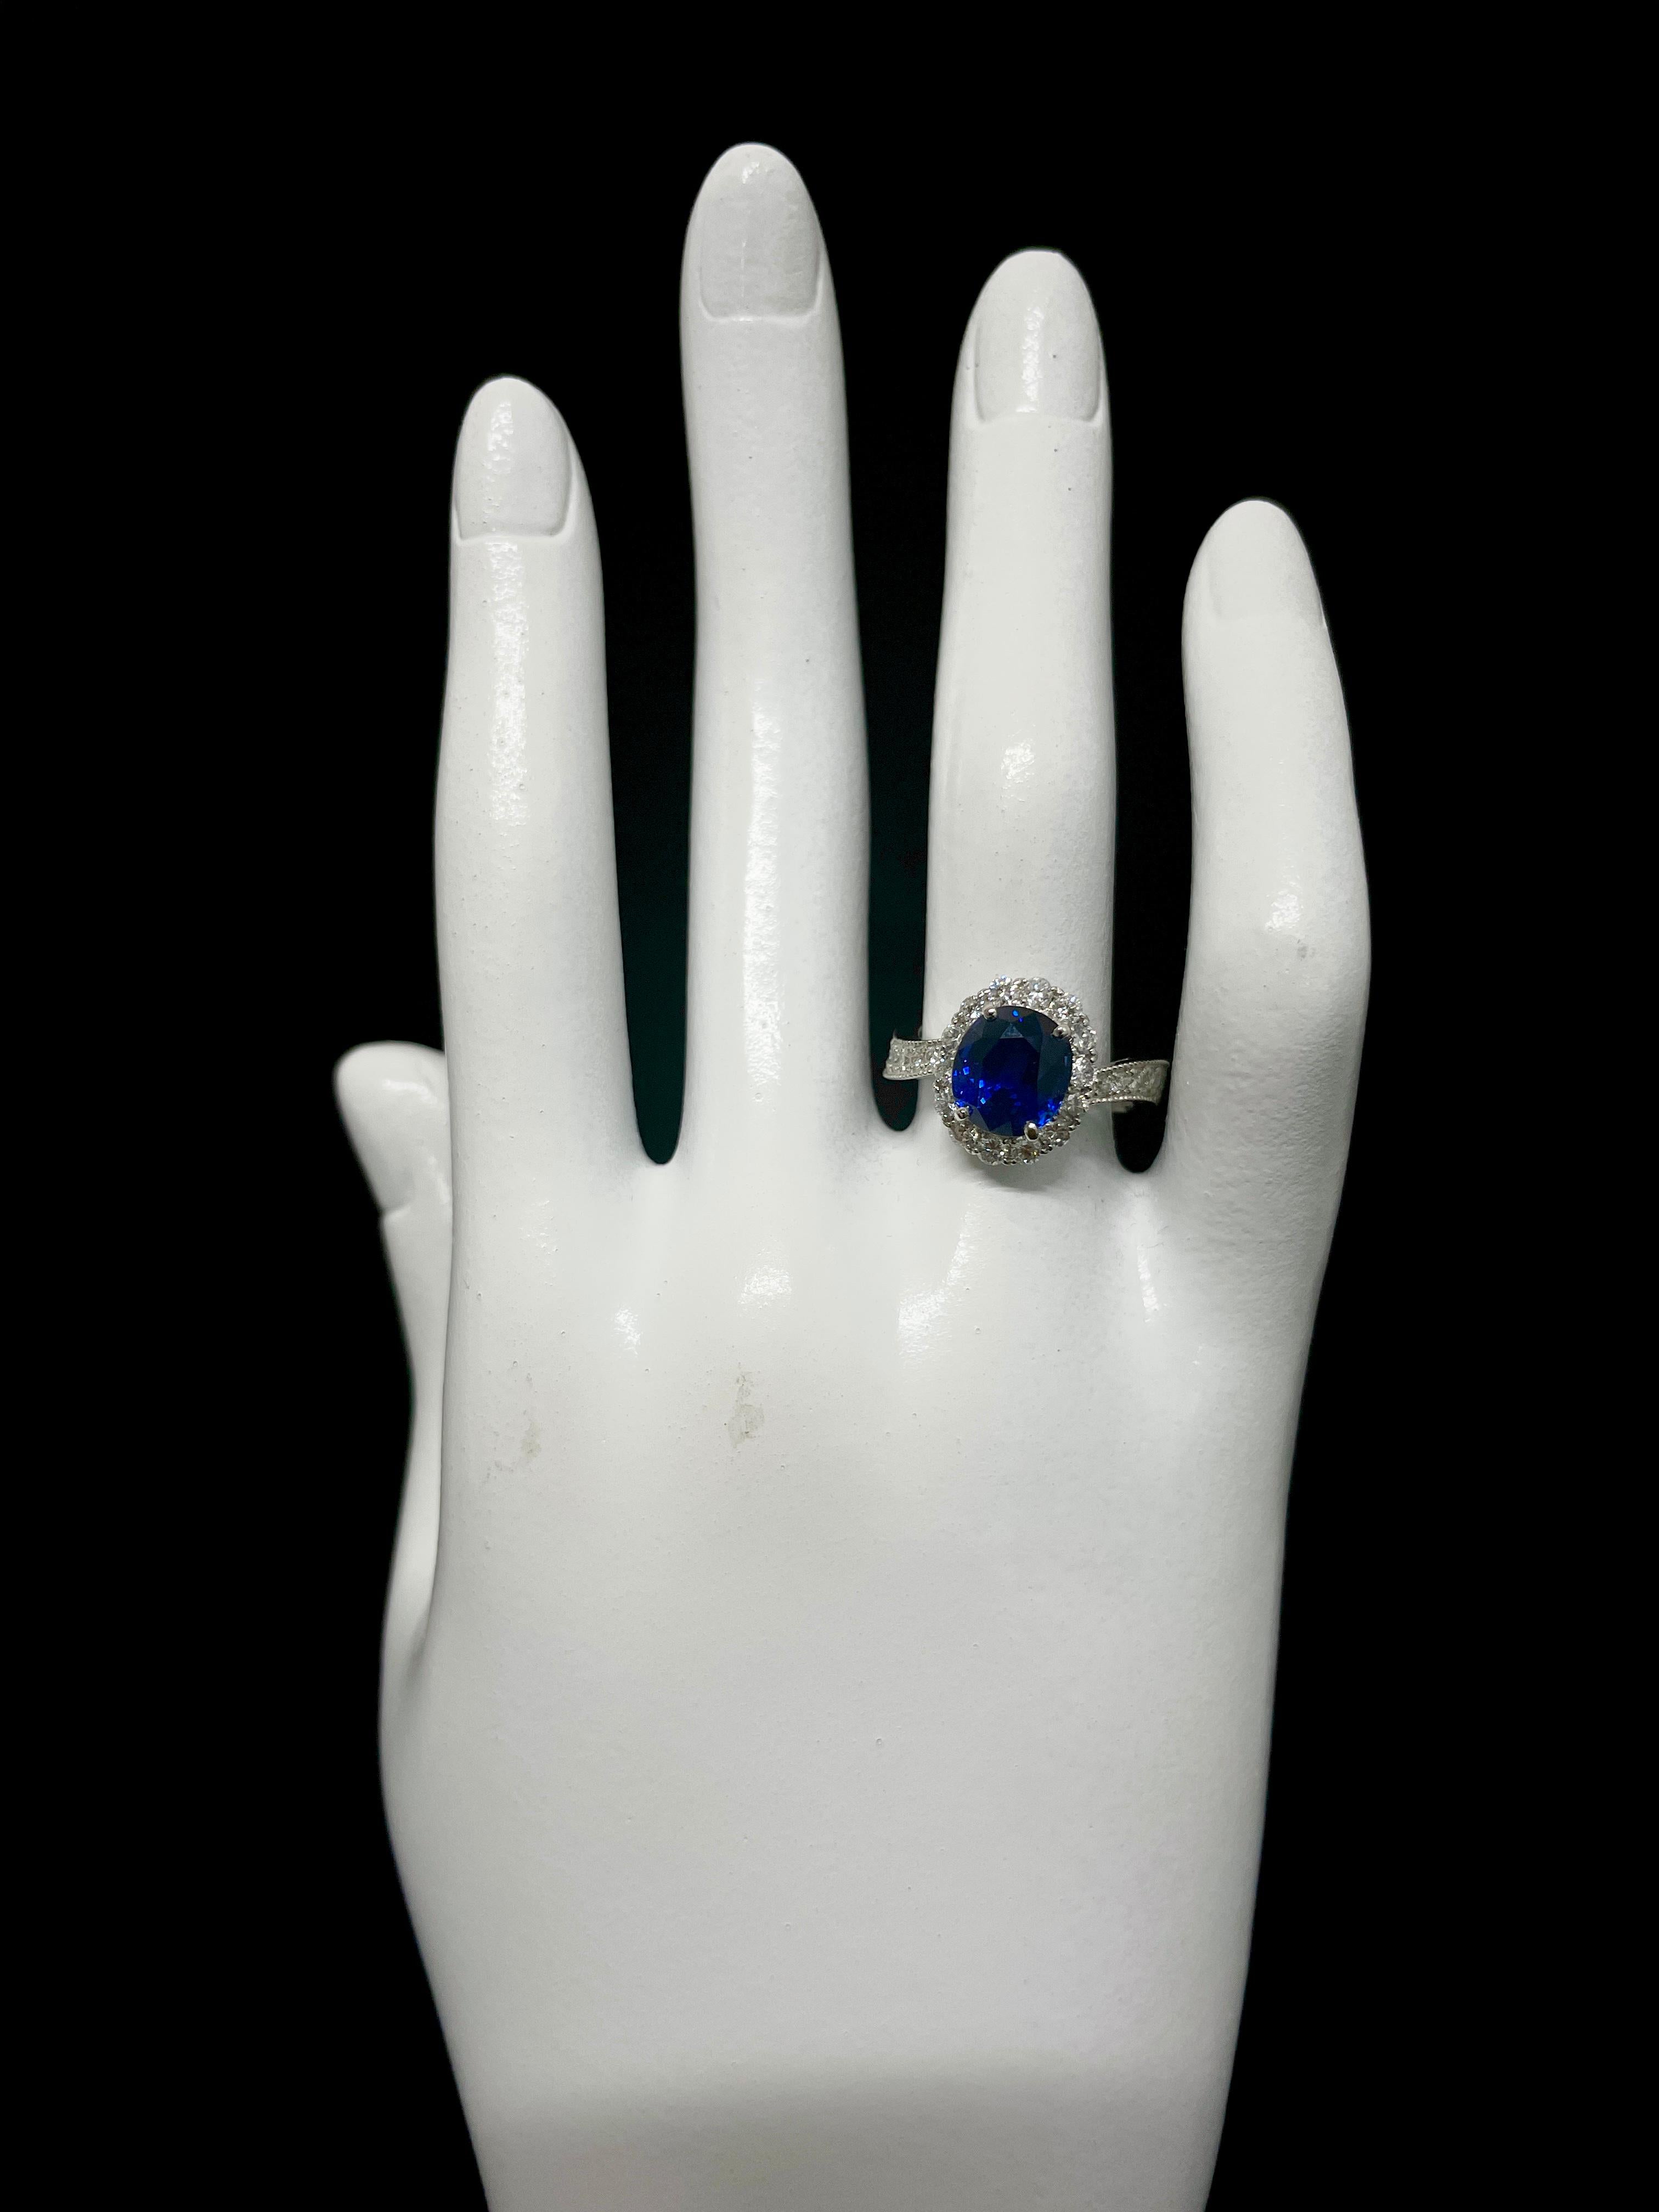 Women's Gia Certified 3.64 Carat Natural Royal Blue Ceylon Sapphire Ring Set in Platinum